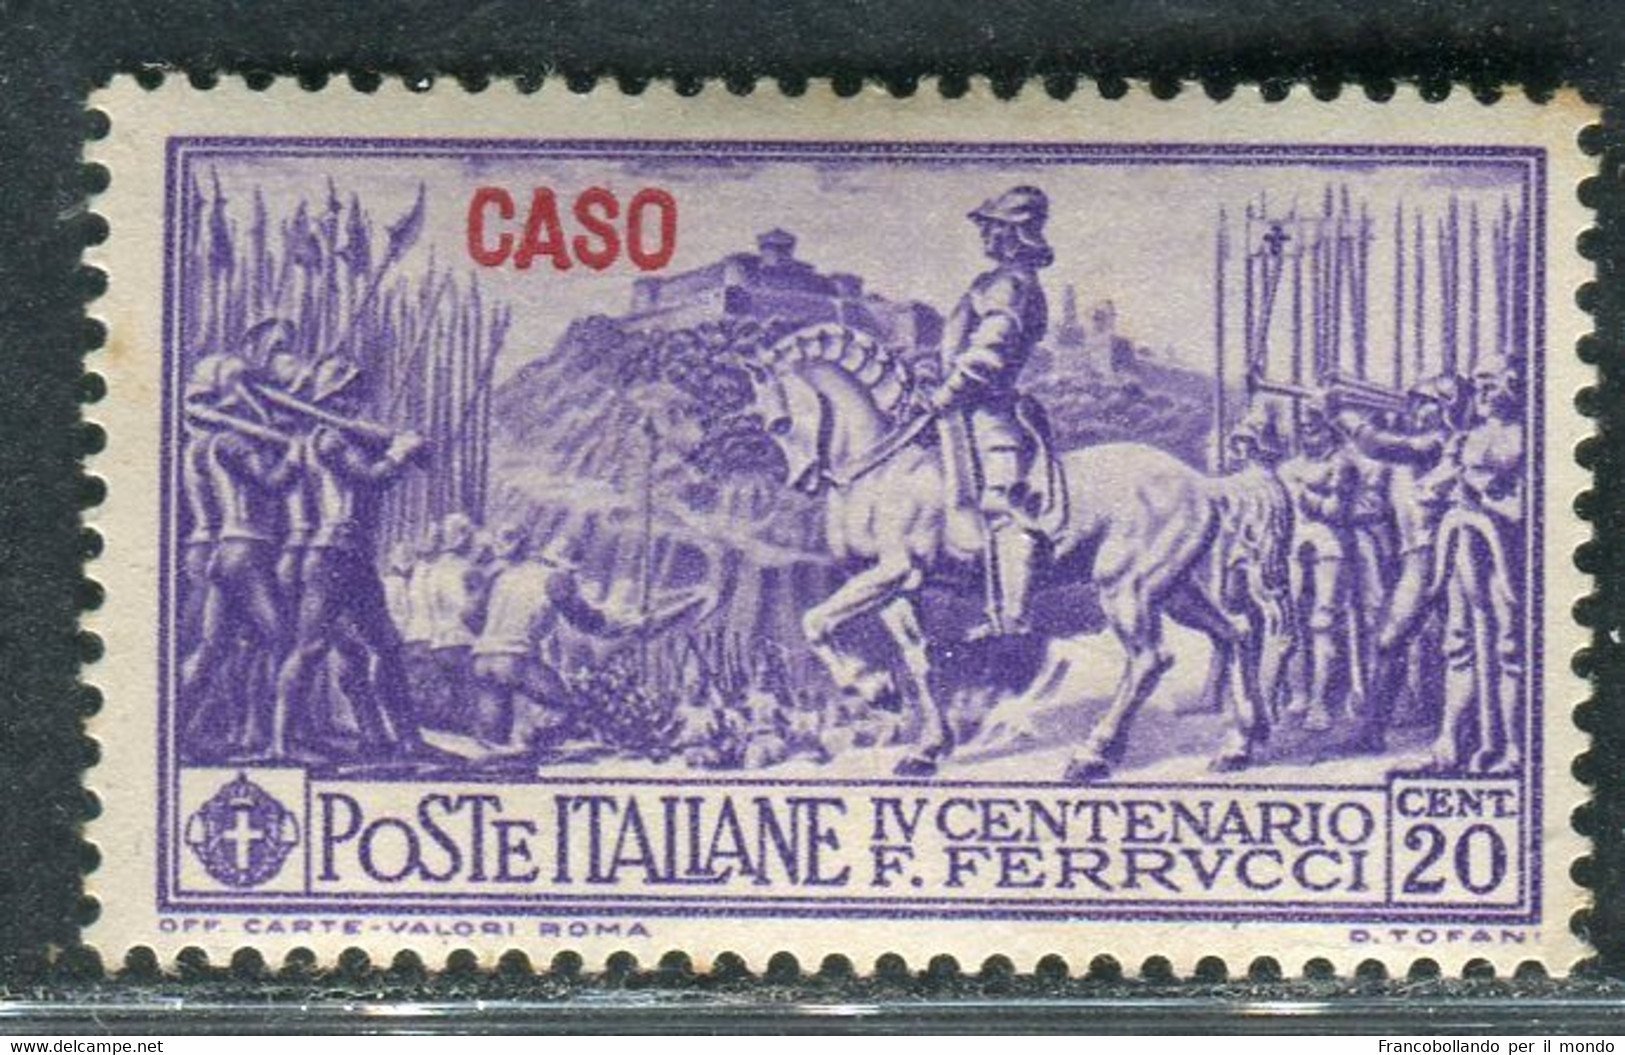 1930 Egeo Isole Caso 20 Cent Serie Ferrucci MH Sassone 12 - Egeo (Lipso)